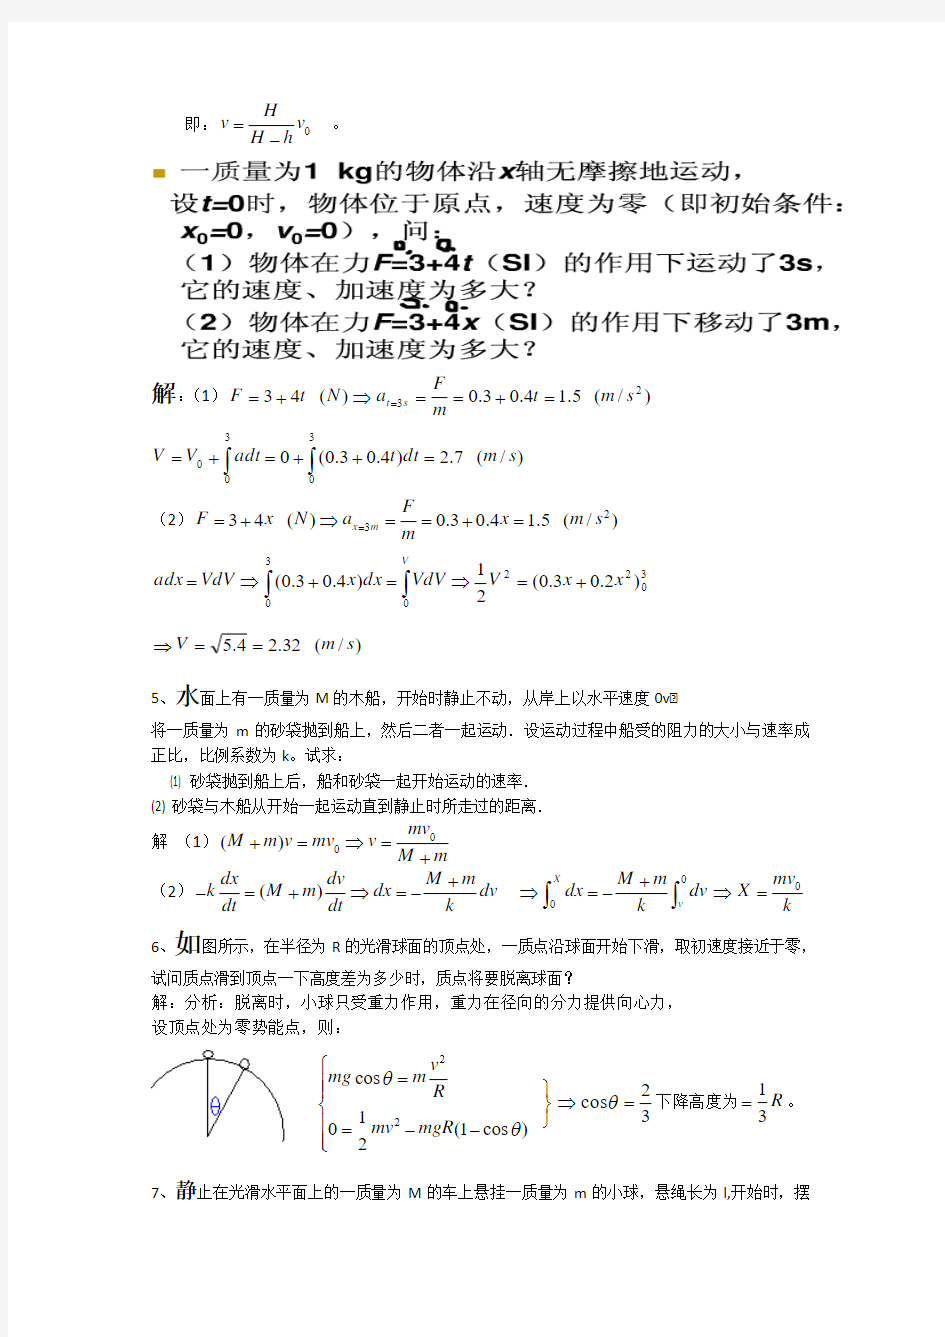 大学物理简明教程-前10章考试大题题目及答案